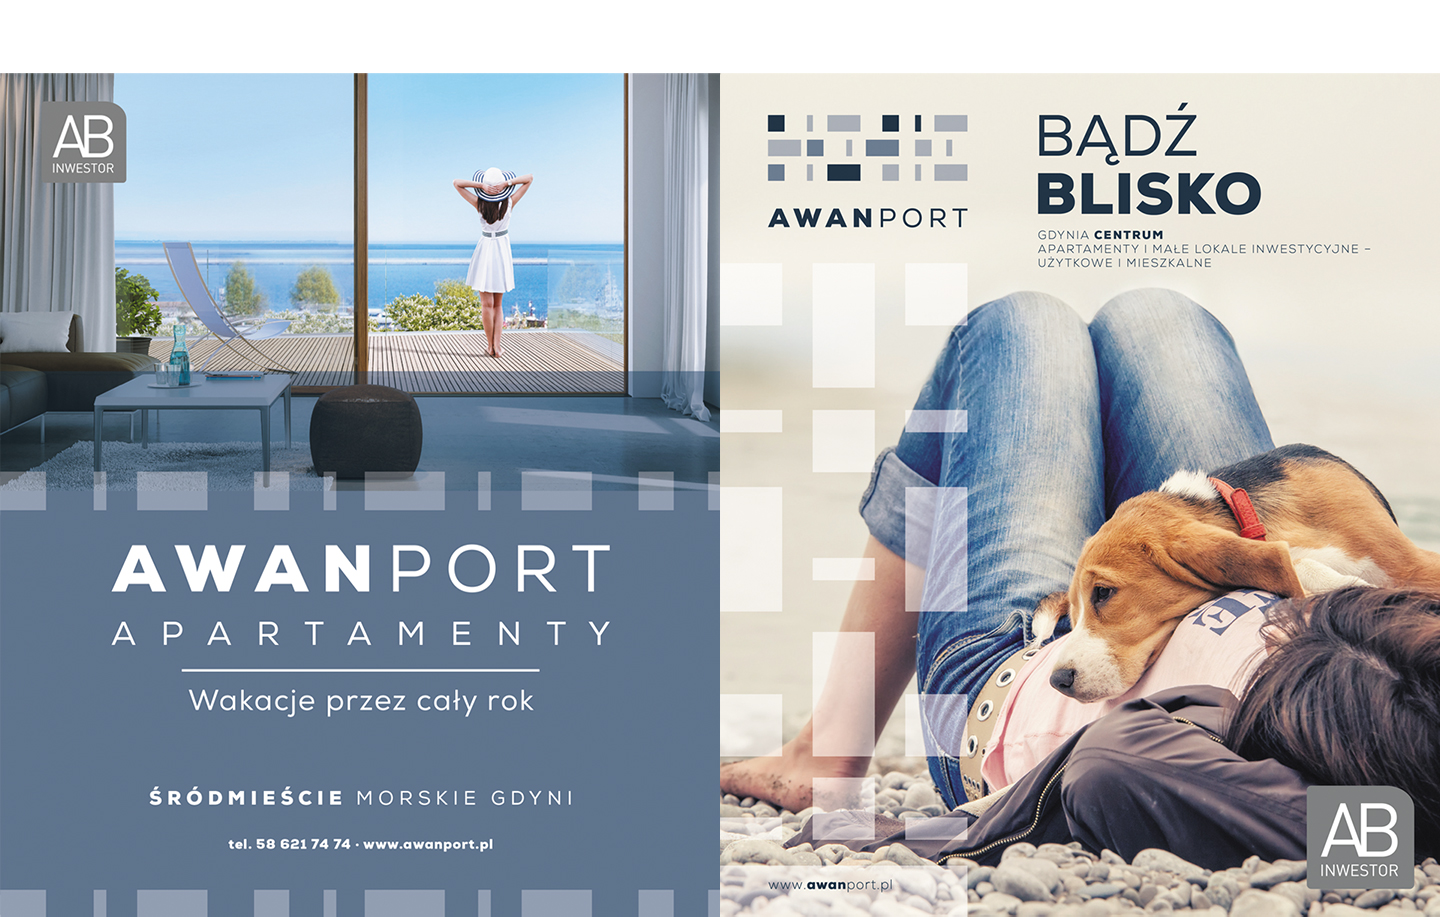 Awanport, AB Inwestor, Gdynia, logo, inwestycja apartamentowa, identyfikacja wizualna, kreacja, key visual, folder reklamowy